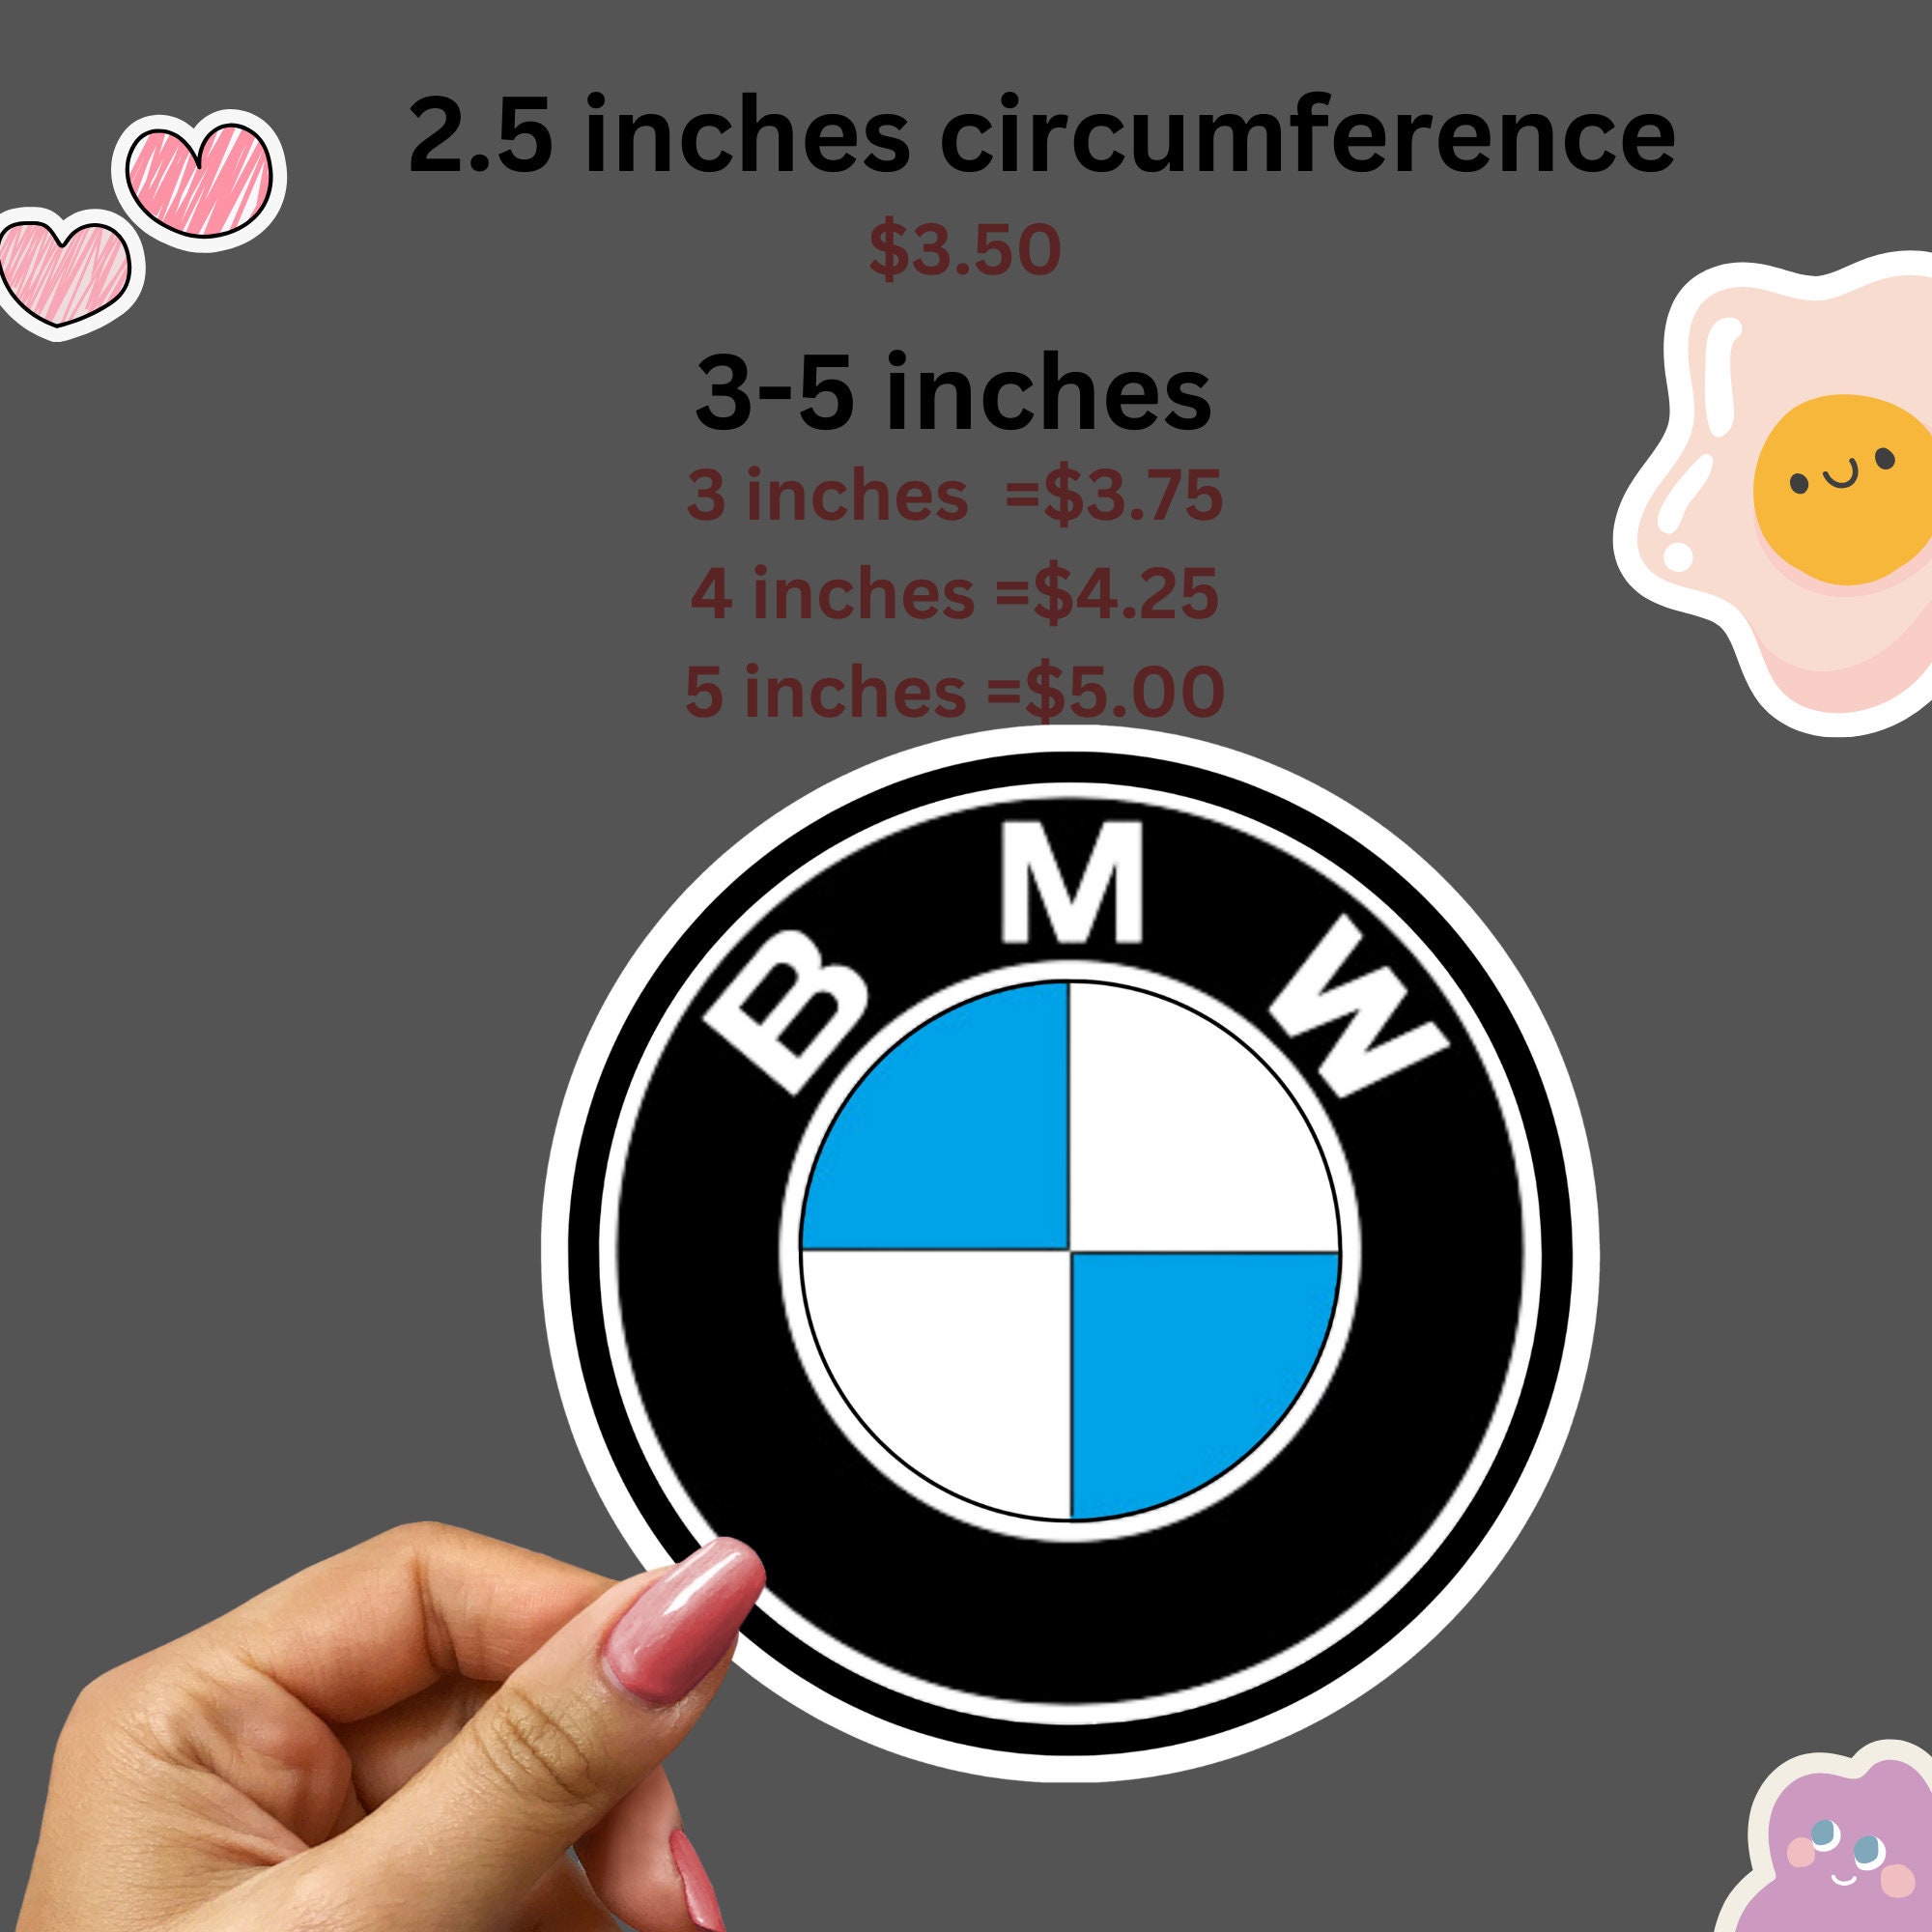 2 stickers autocollants logo BMW